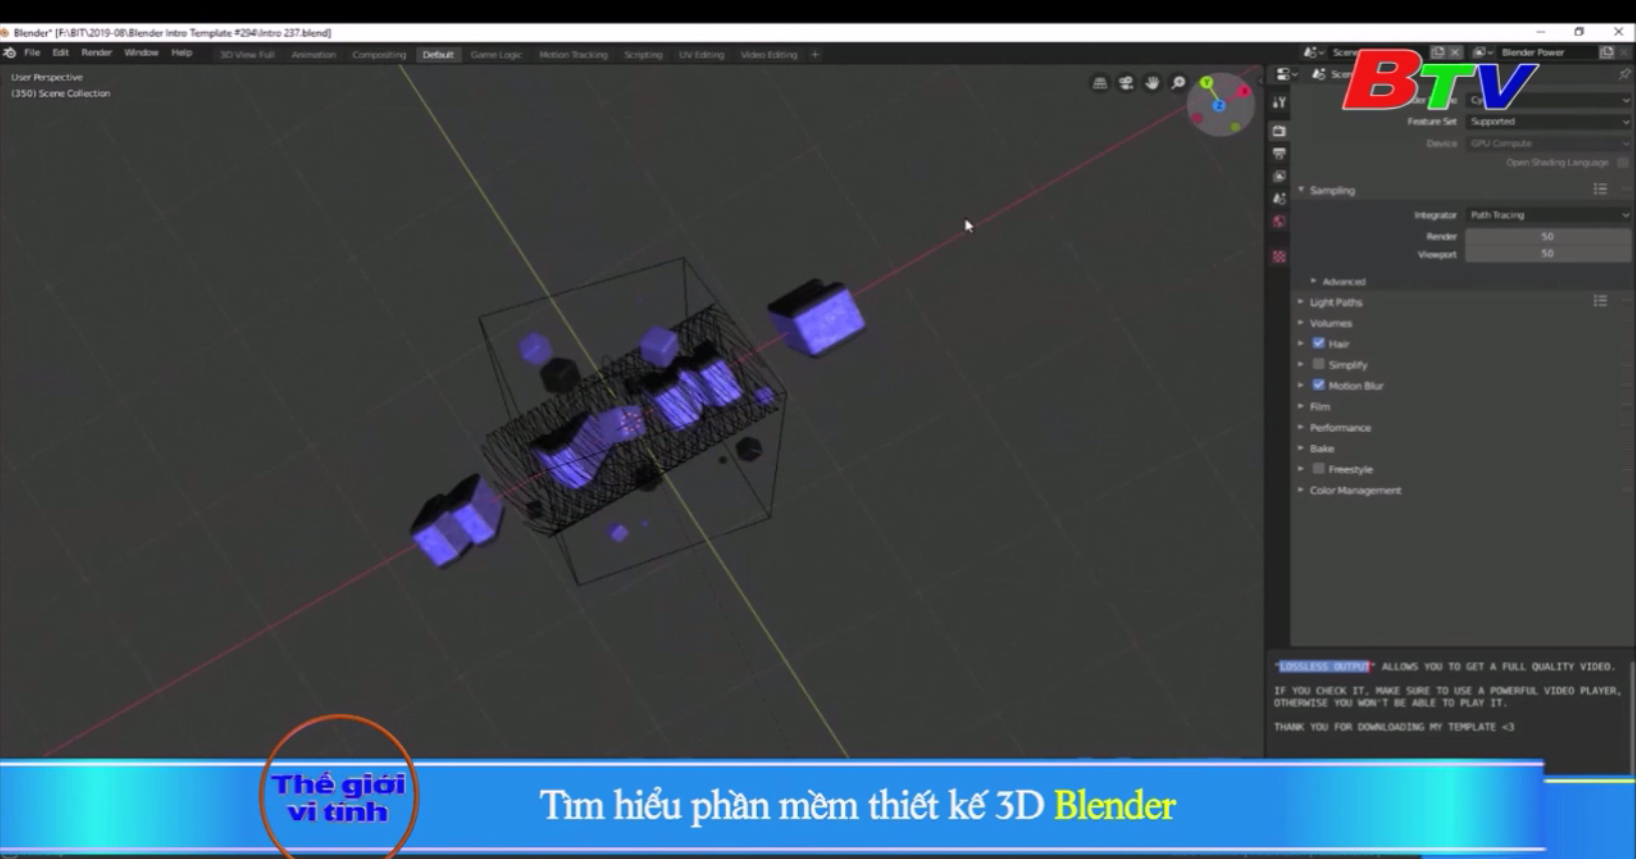 Tìm hiểu phần mềm thiết kế 3D Blender